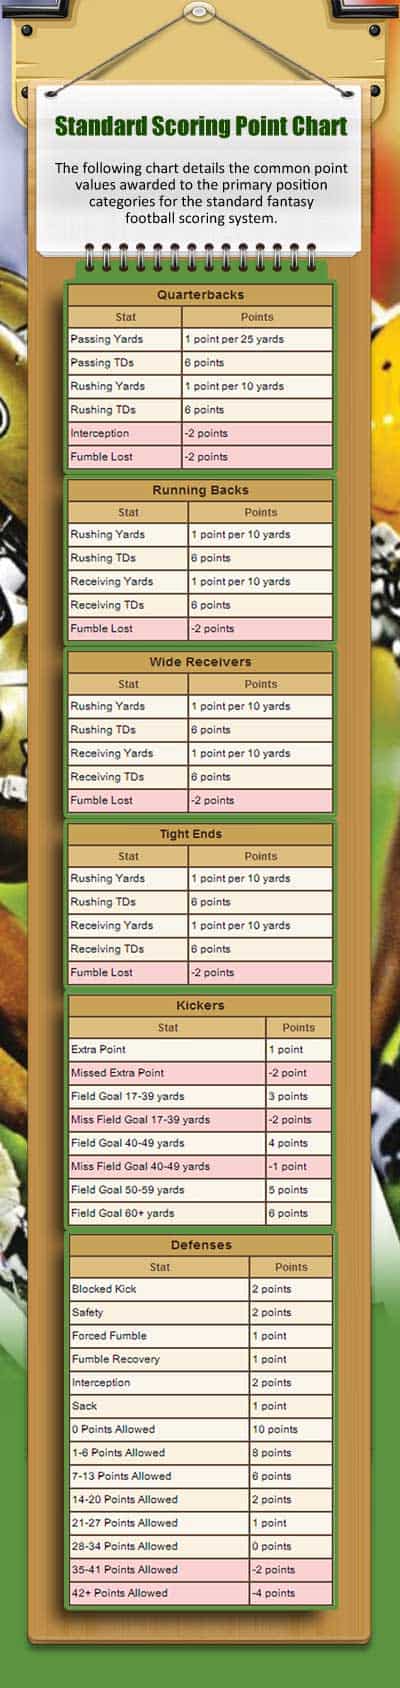 Standard Fantasy Football Scoring System